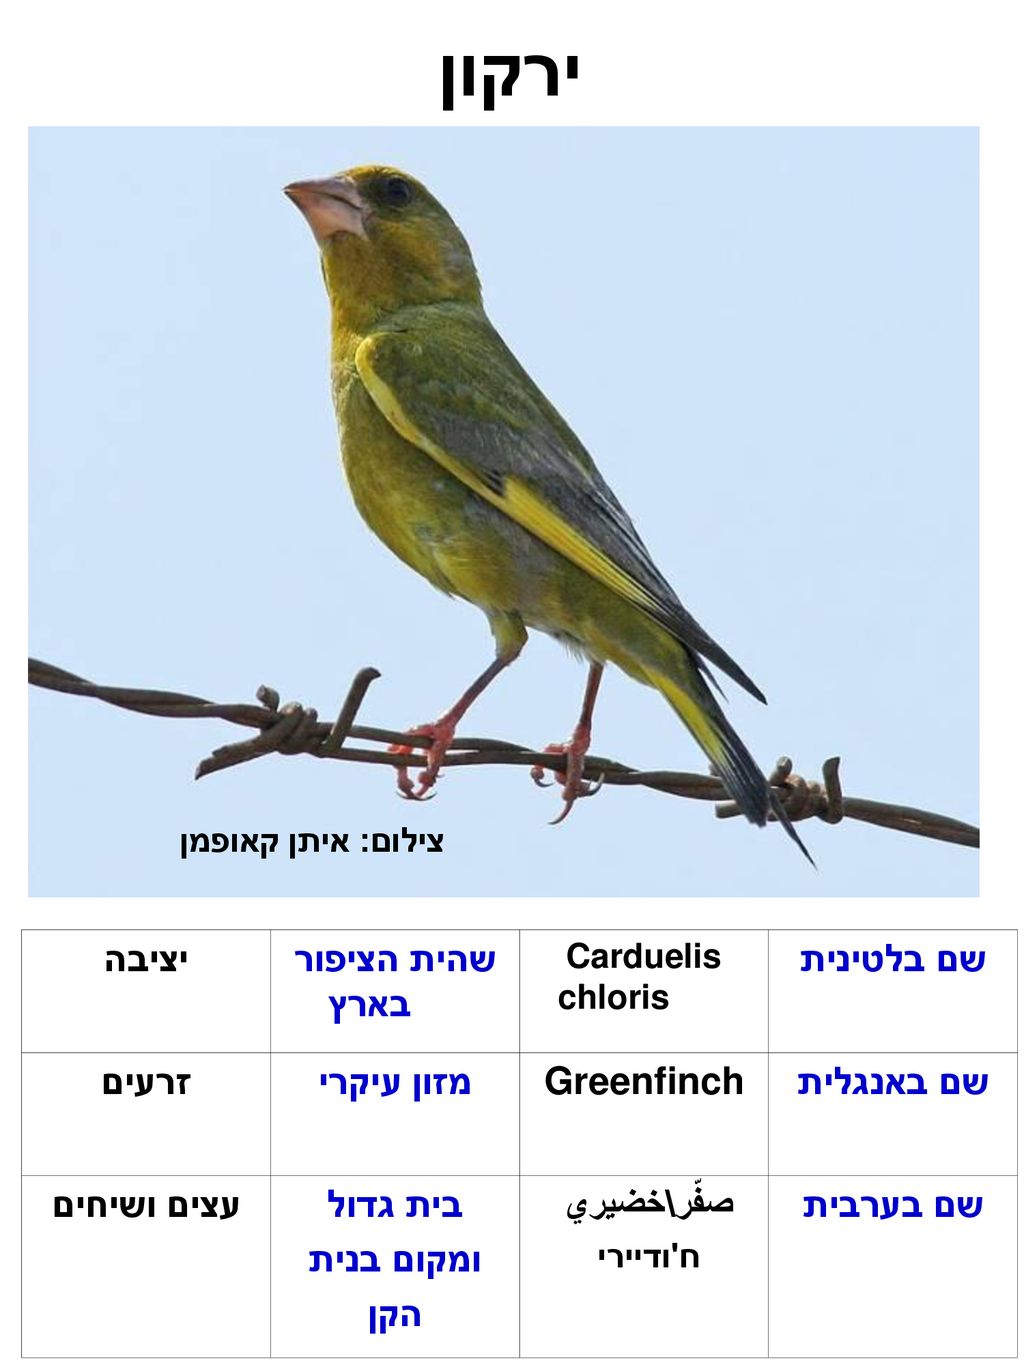 ירקון שם בלטינית שהית הציפור בארץ יציבה שם באנגלית Greenfinch